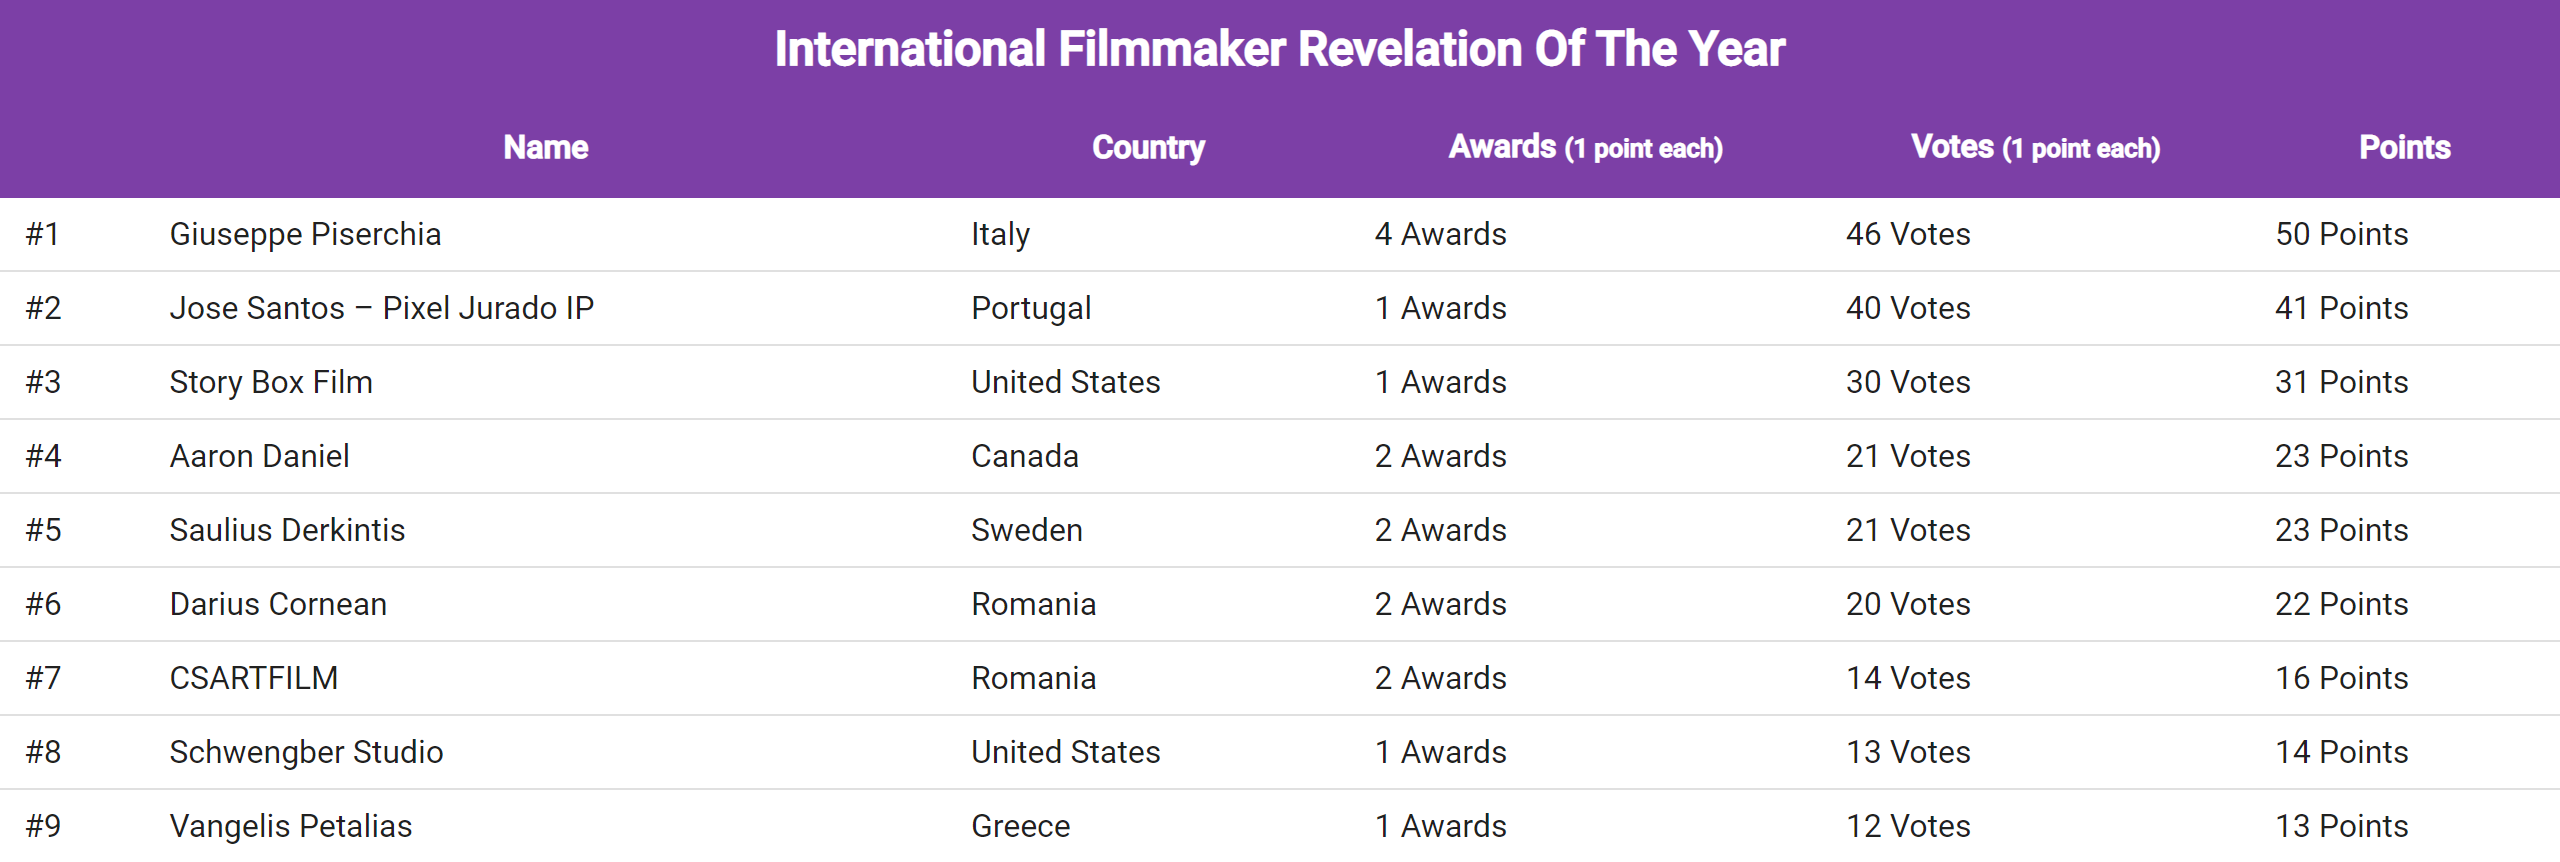 international_filmmaker_revelation_of_the_year_2021